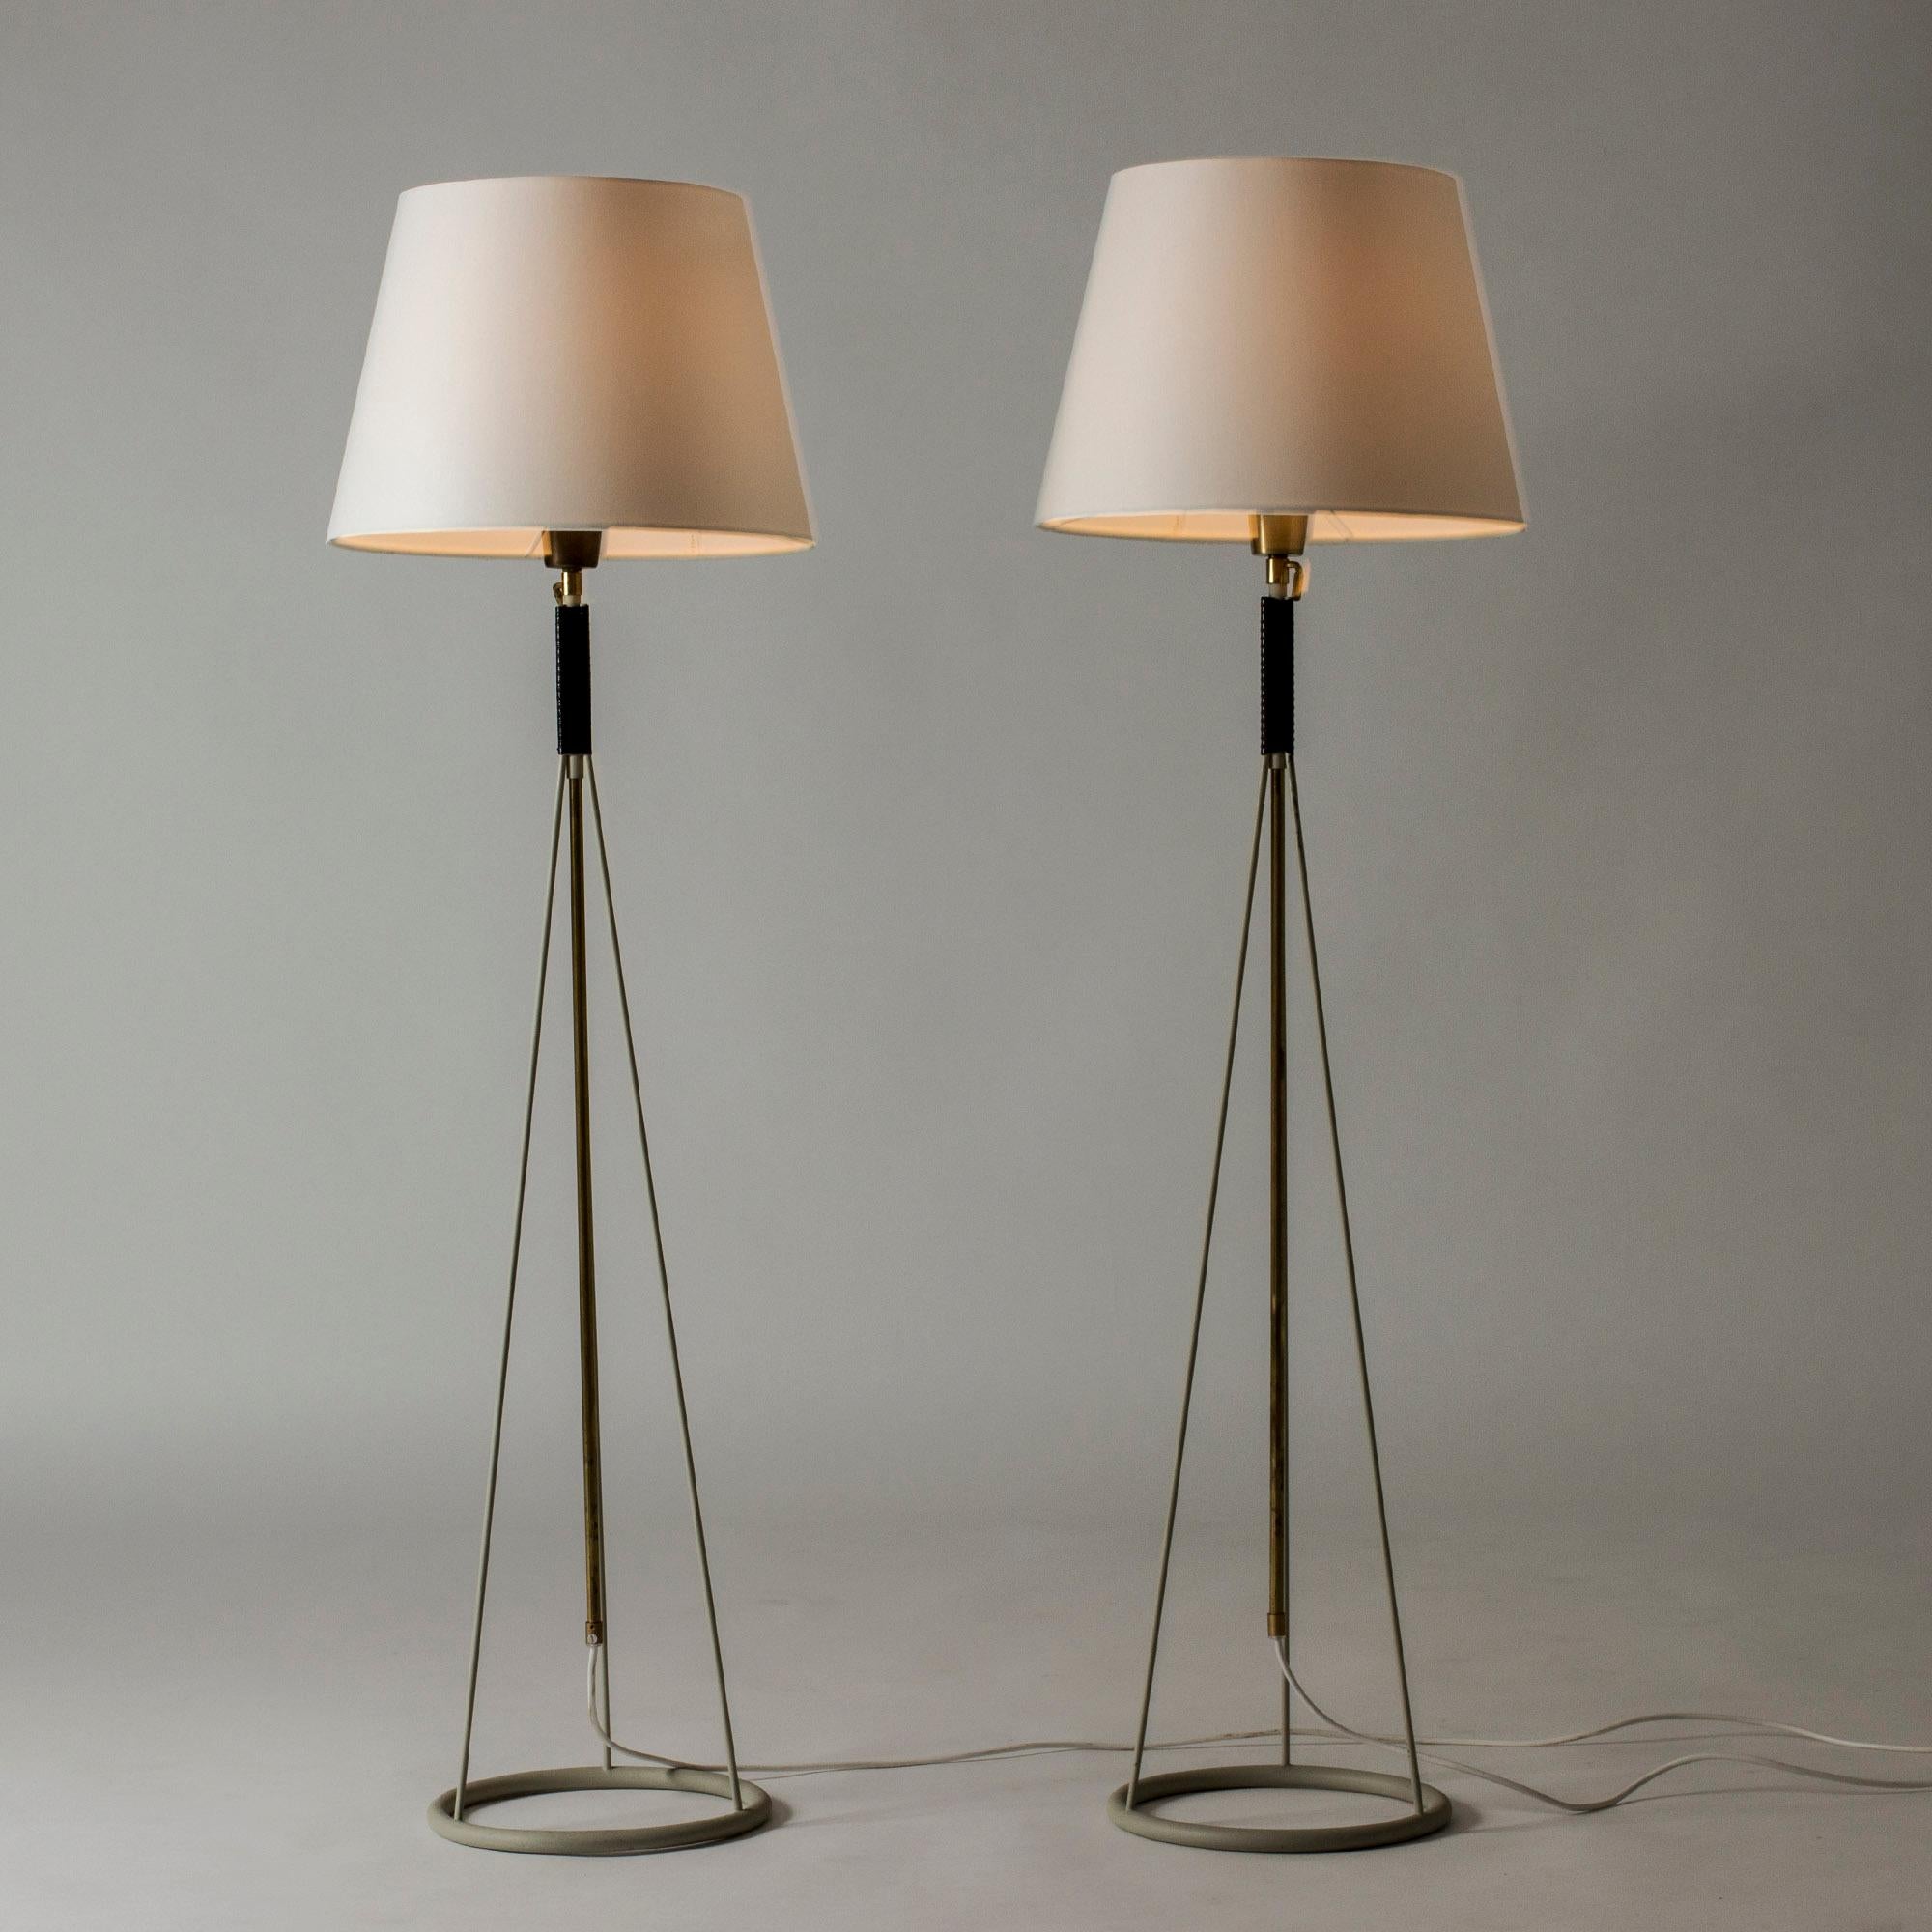 Rare paire de lampadaires du designer suédois Eje Ahlgren pour Luco (Göteborg, Suède années 1950). D'une forme assez futuriste pour l'époque, ces lampadaires, réglables en hauteur à l'aide d'une jolie virole en laiton, offrent une belle lumière.